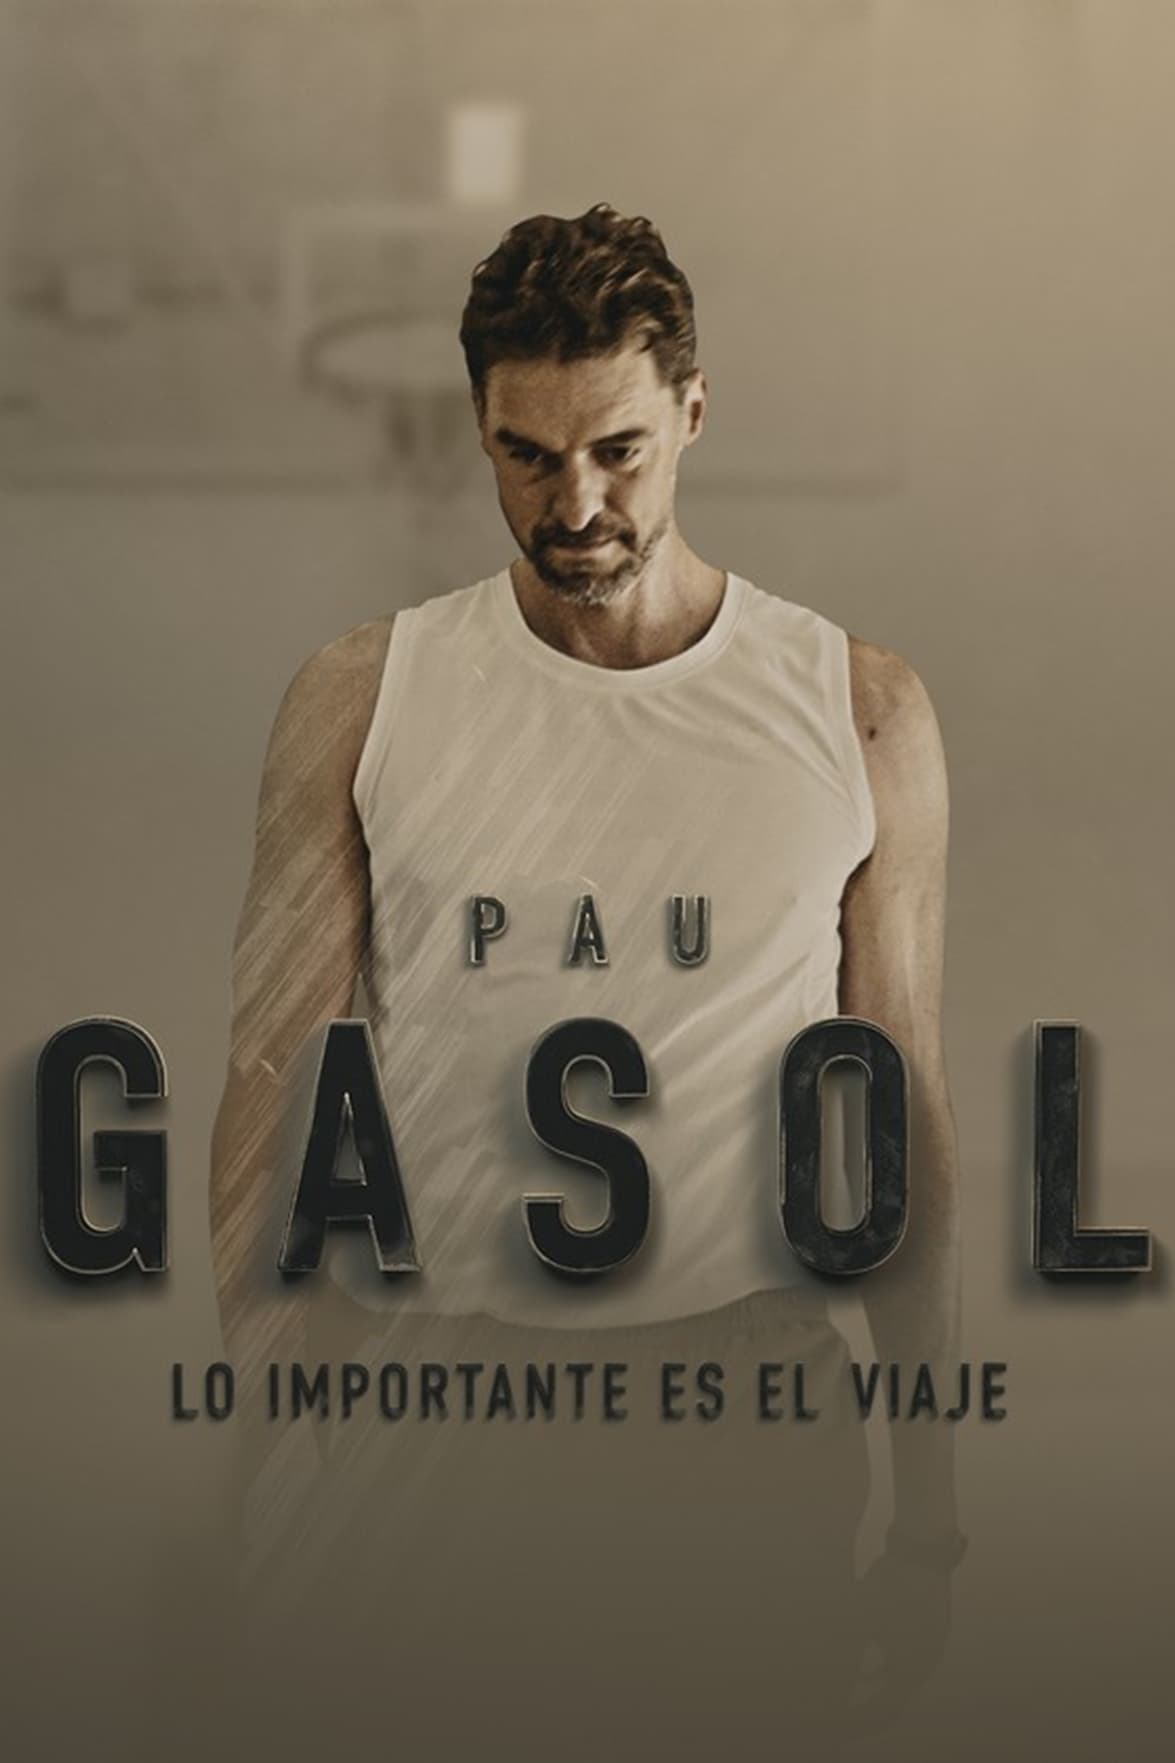 Pau Gasol - Lo importante es el Viaje TV Shows About Basketball Player